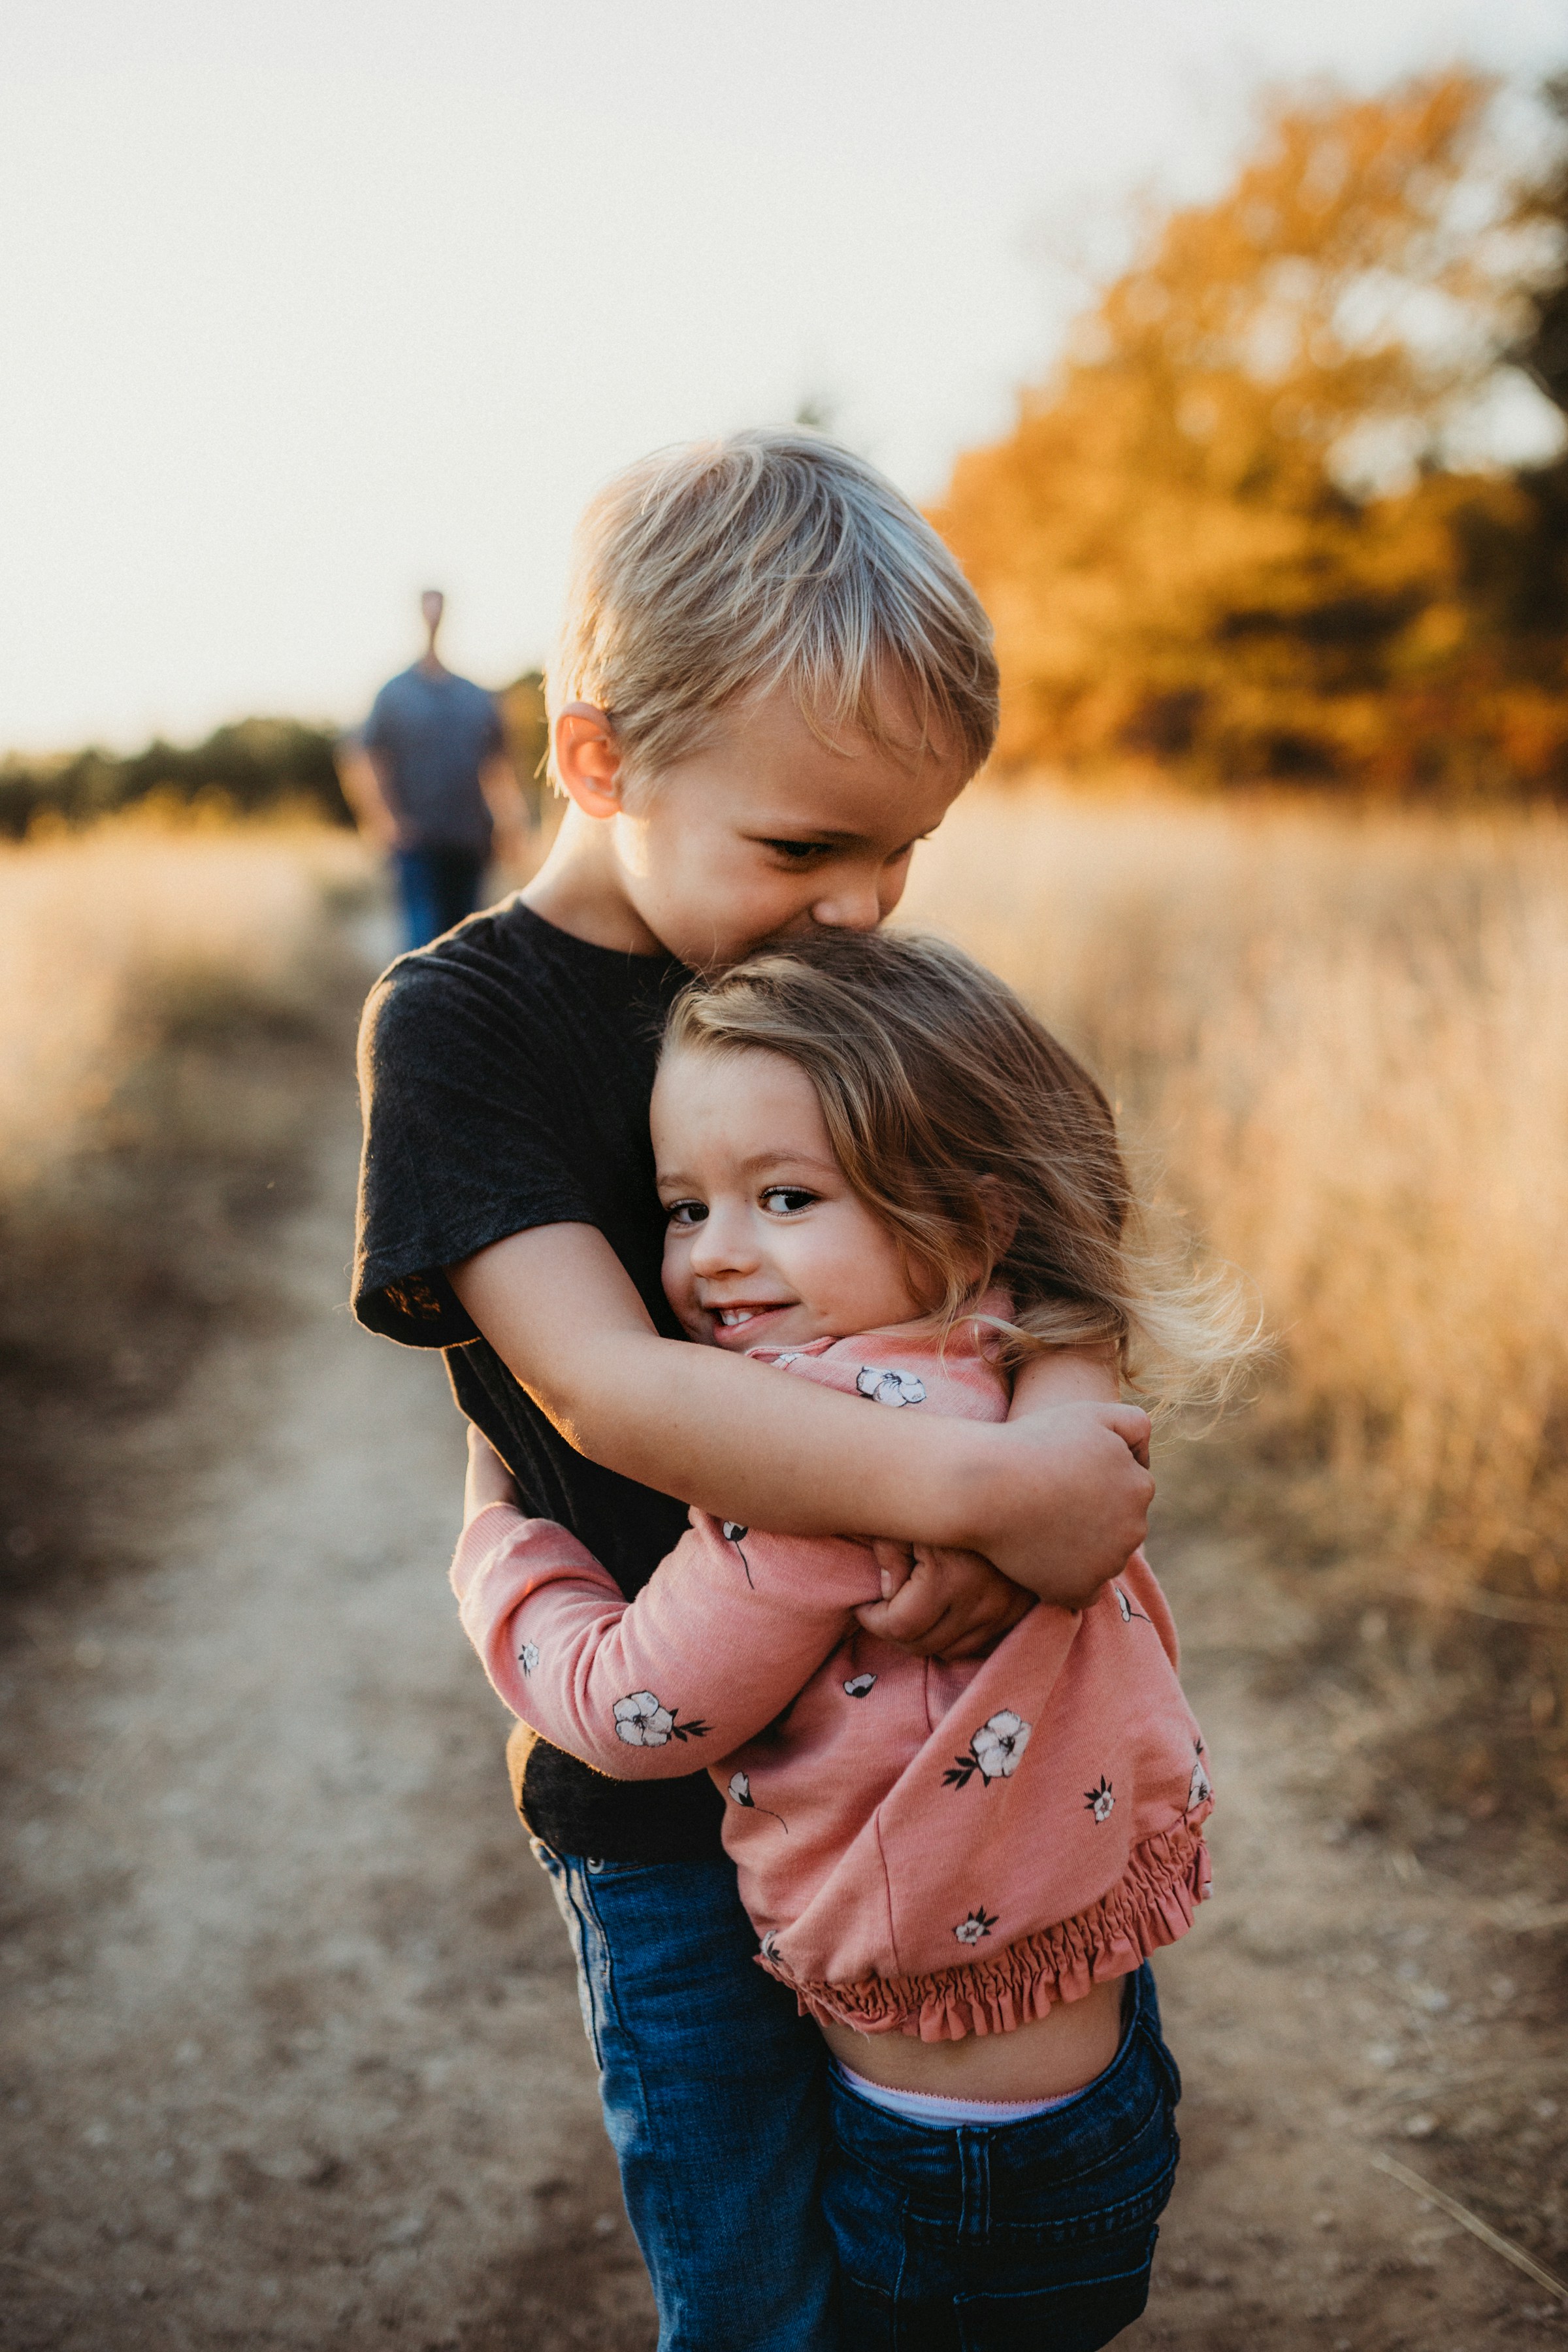 Ein großer Bruder, der seine kleine Schwester umarmt | Quelle: Unsplash